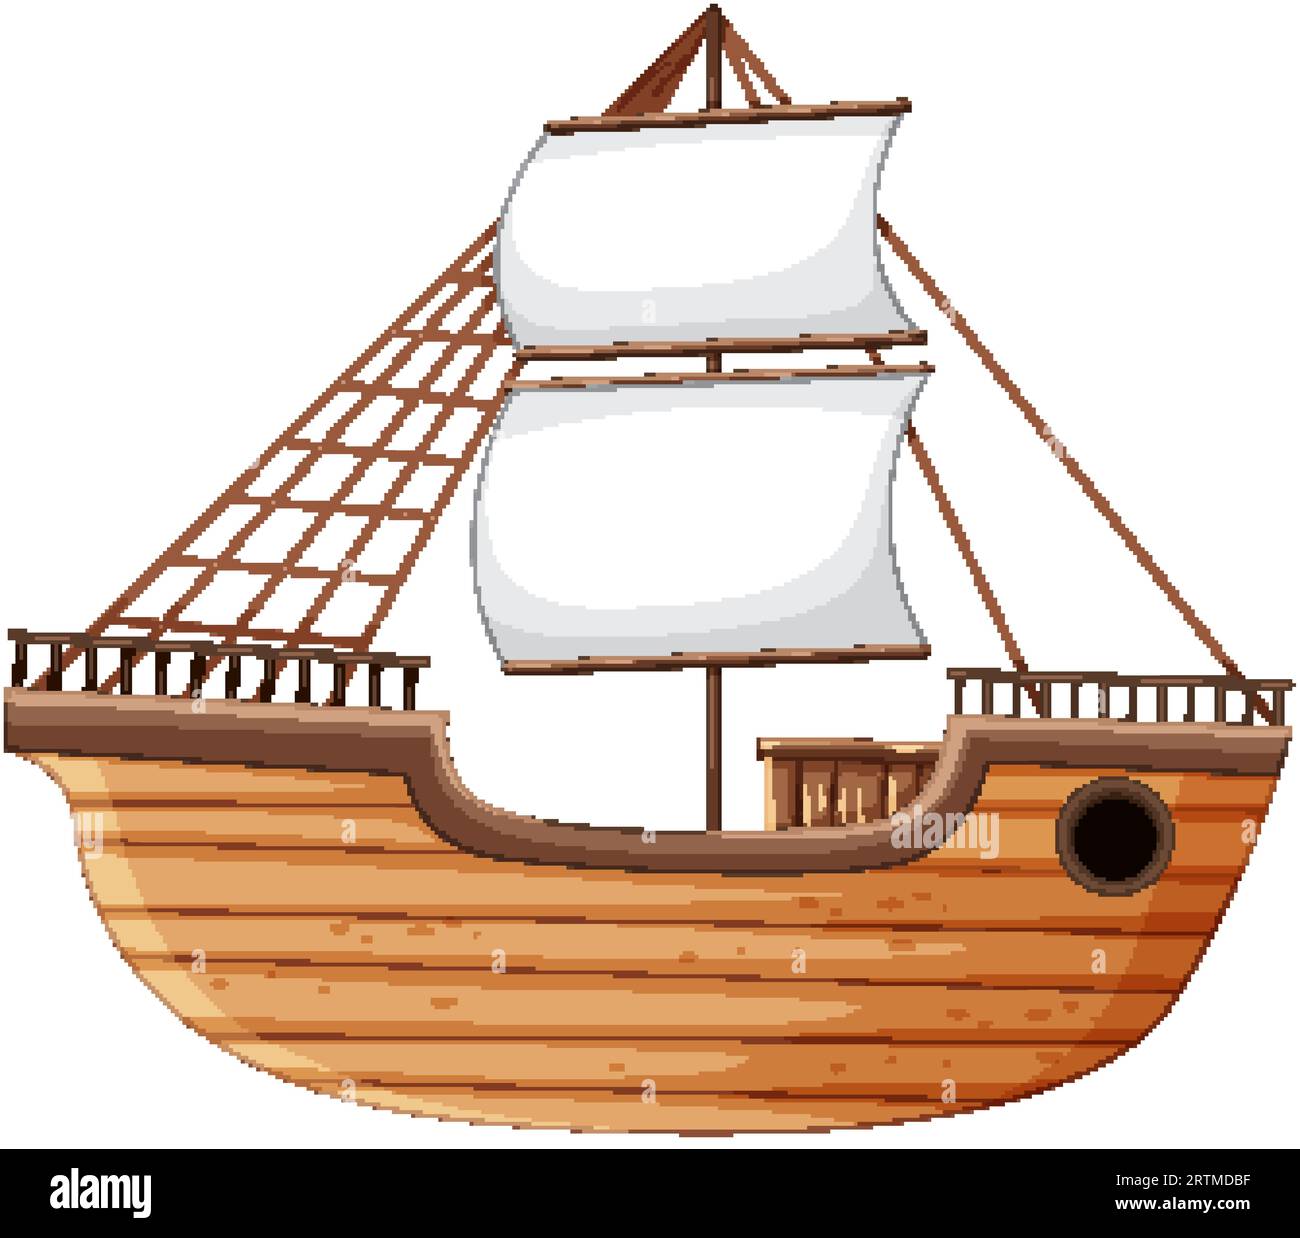 Une illustration de dessin animé vectoriel d'un navire en bois, isolé sur un fond blanc Illustration de Vecteur